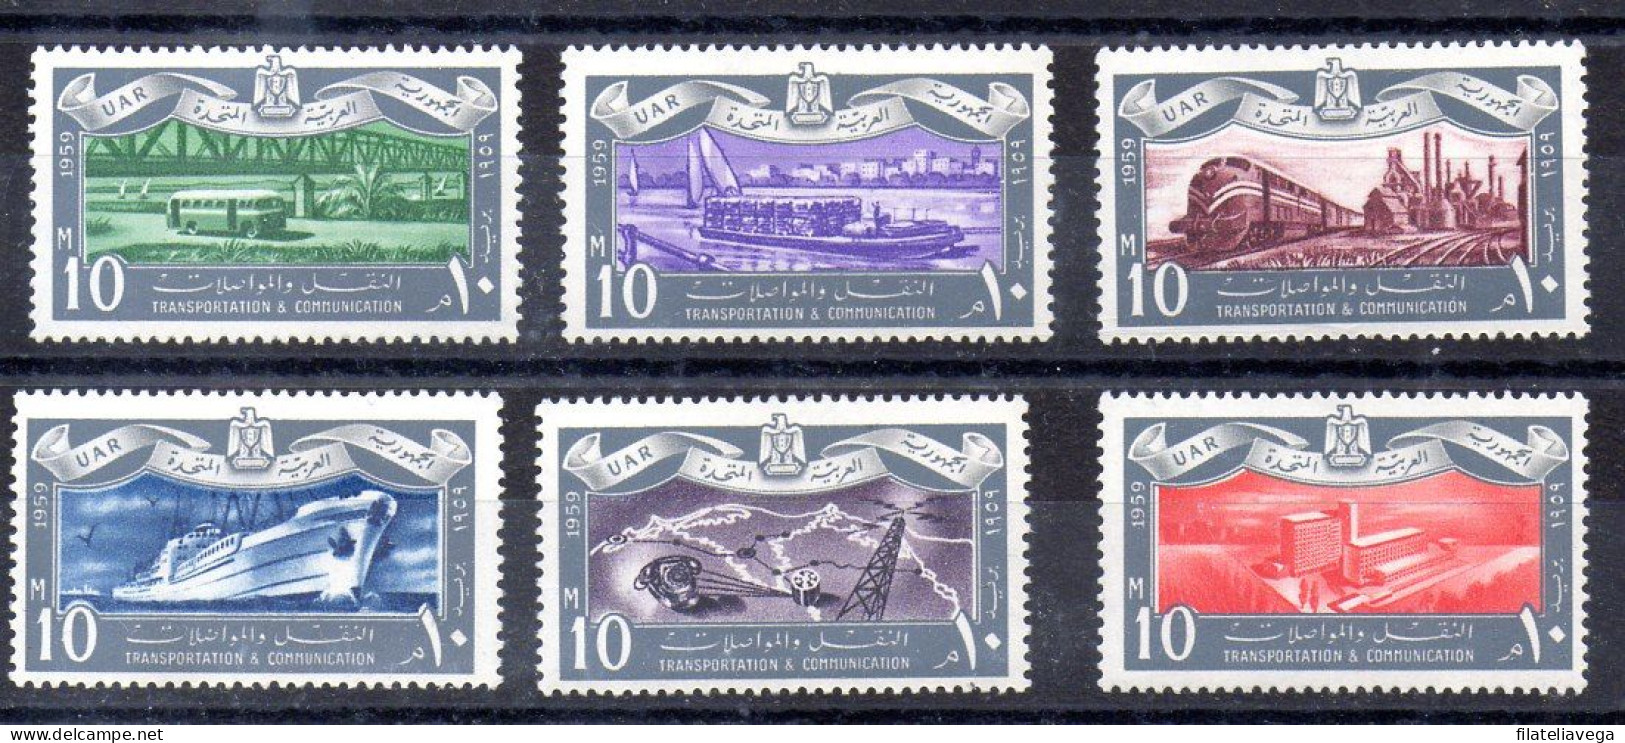 Egipto Serie Nº Yvert 449/54 ** - Unused Stamps